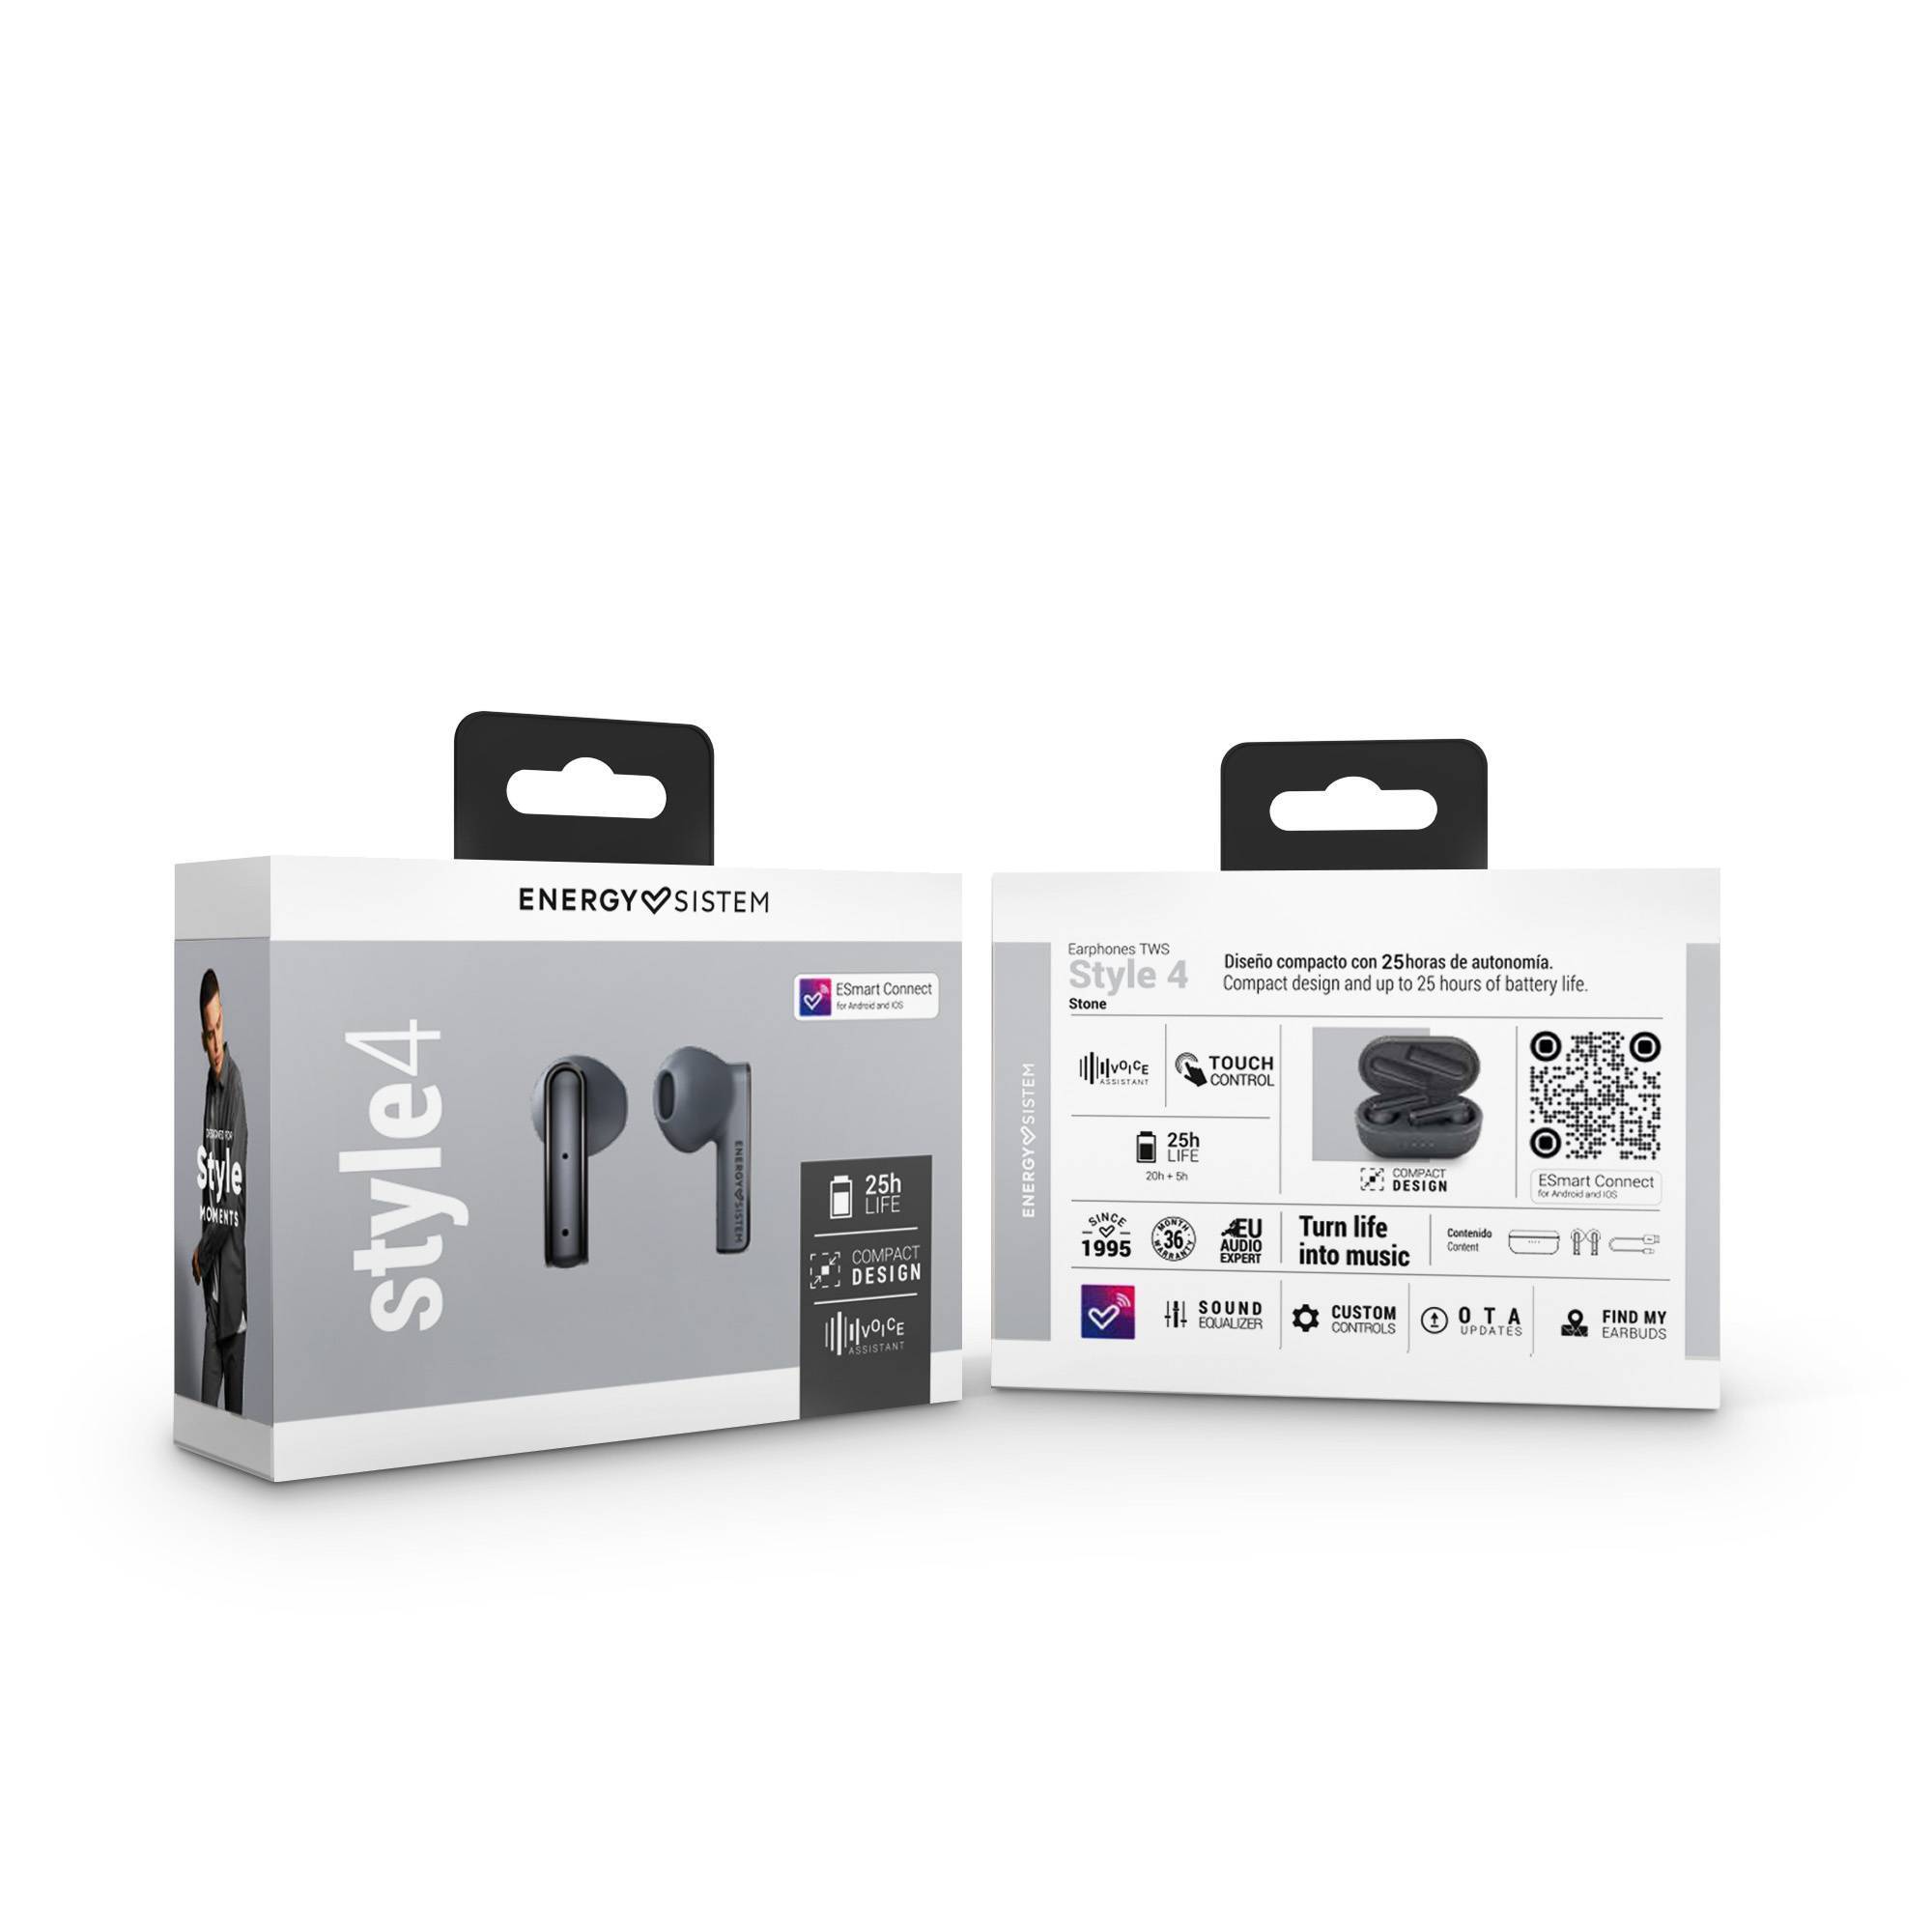 Stone True Wireless Style 4 earphones' packaging